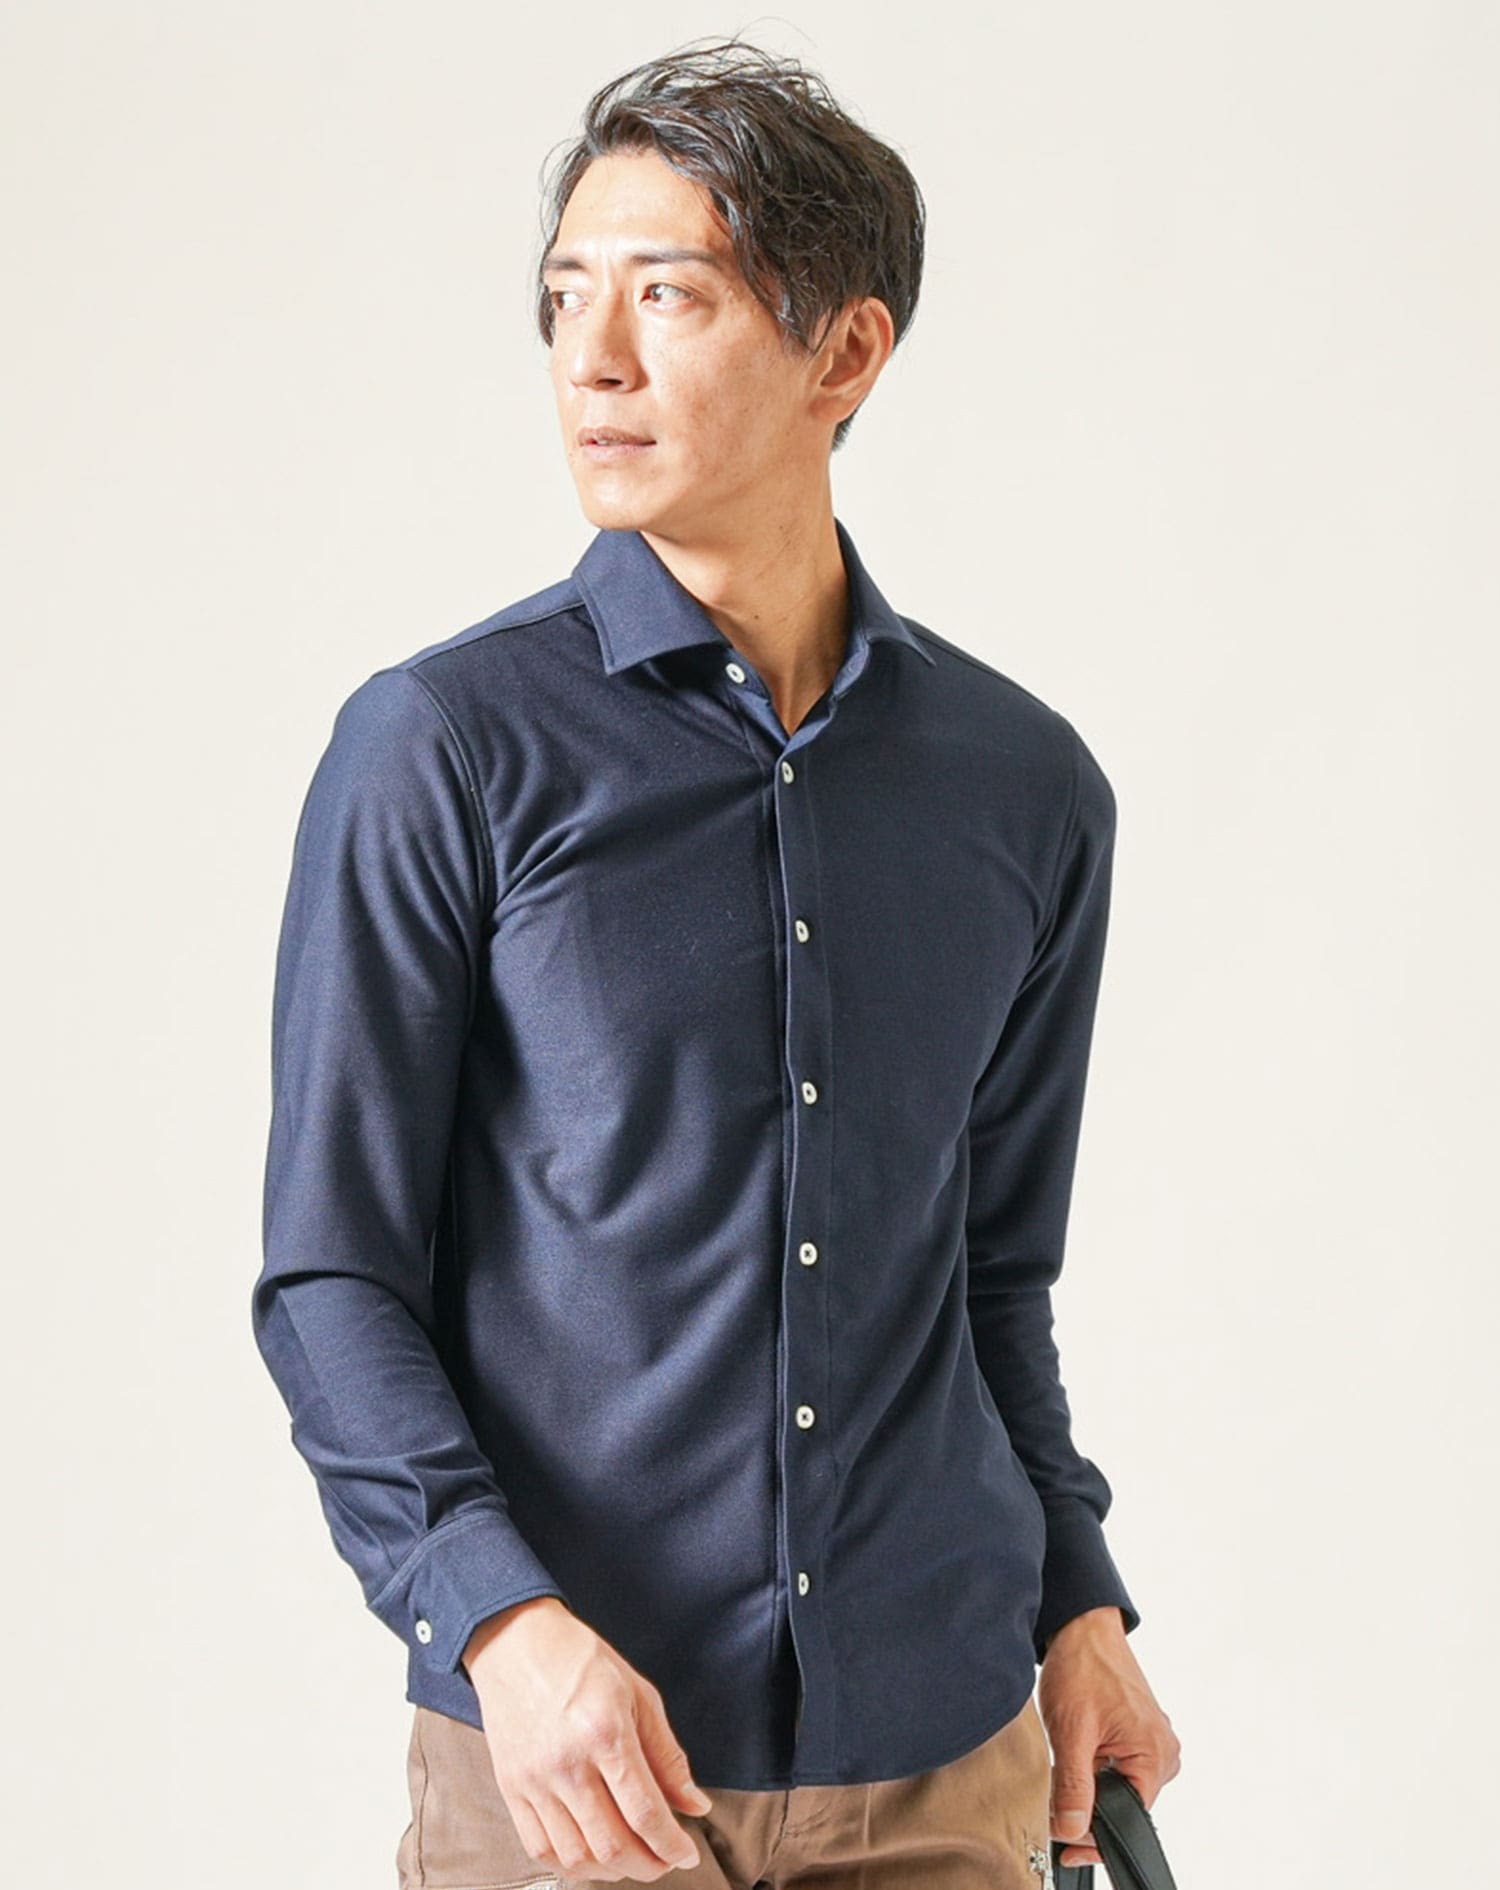 日本製ニットライクホリゾンタルカラー長袖シャツ